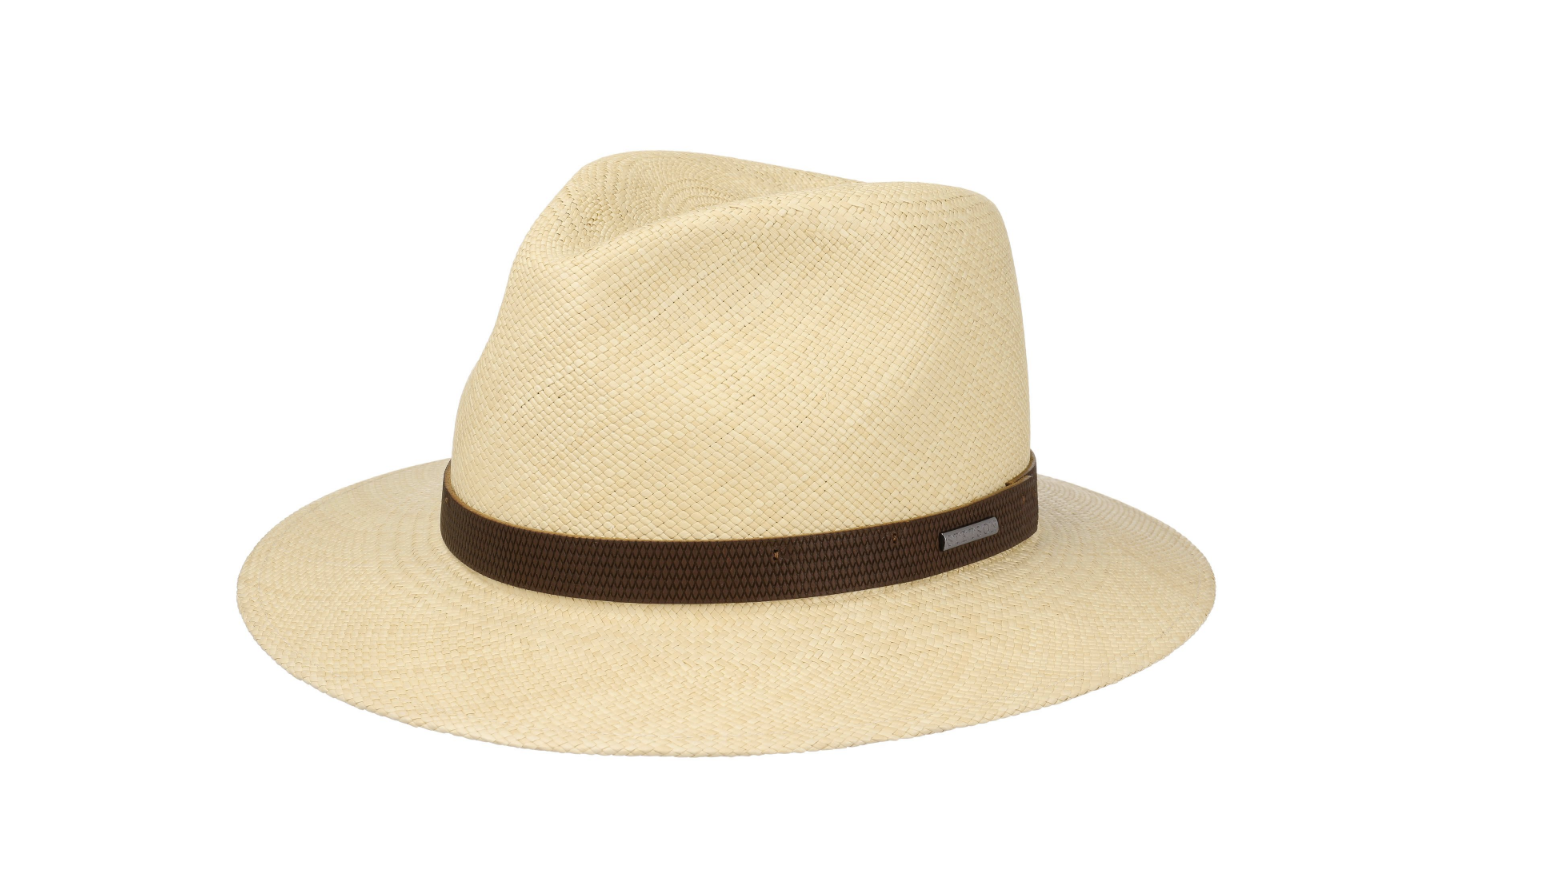 Headgear for beard wearers: The Panama Hat